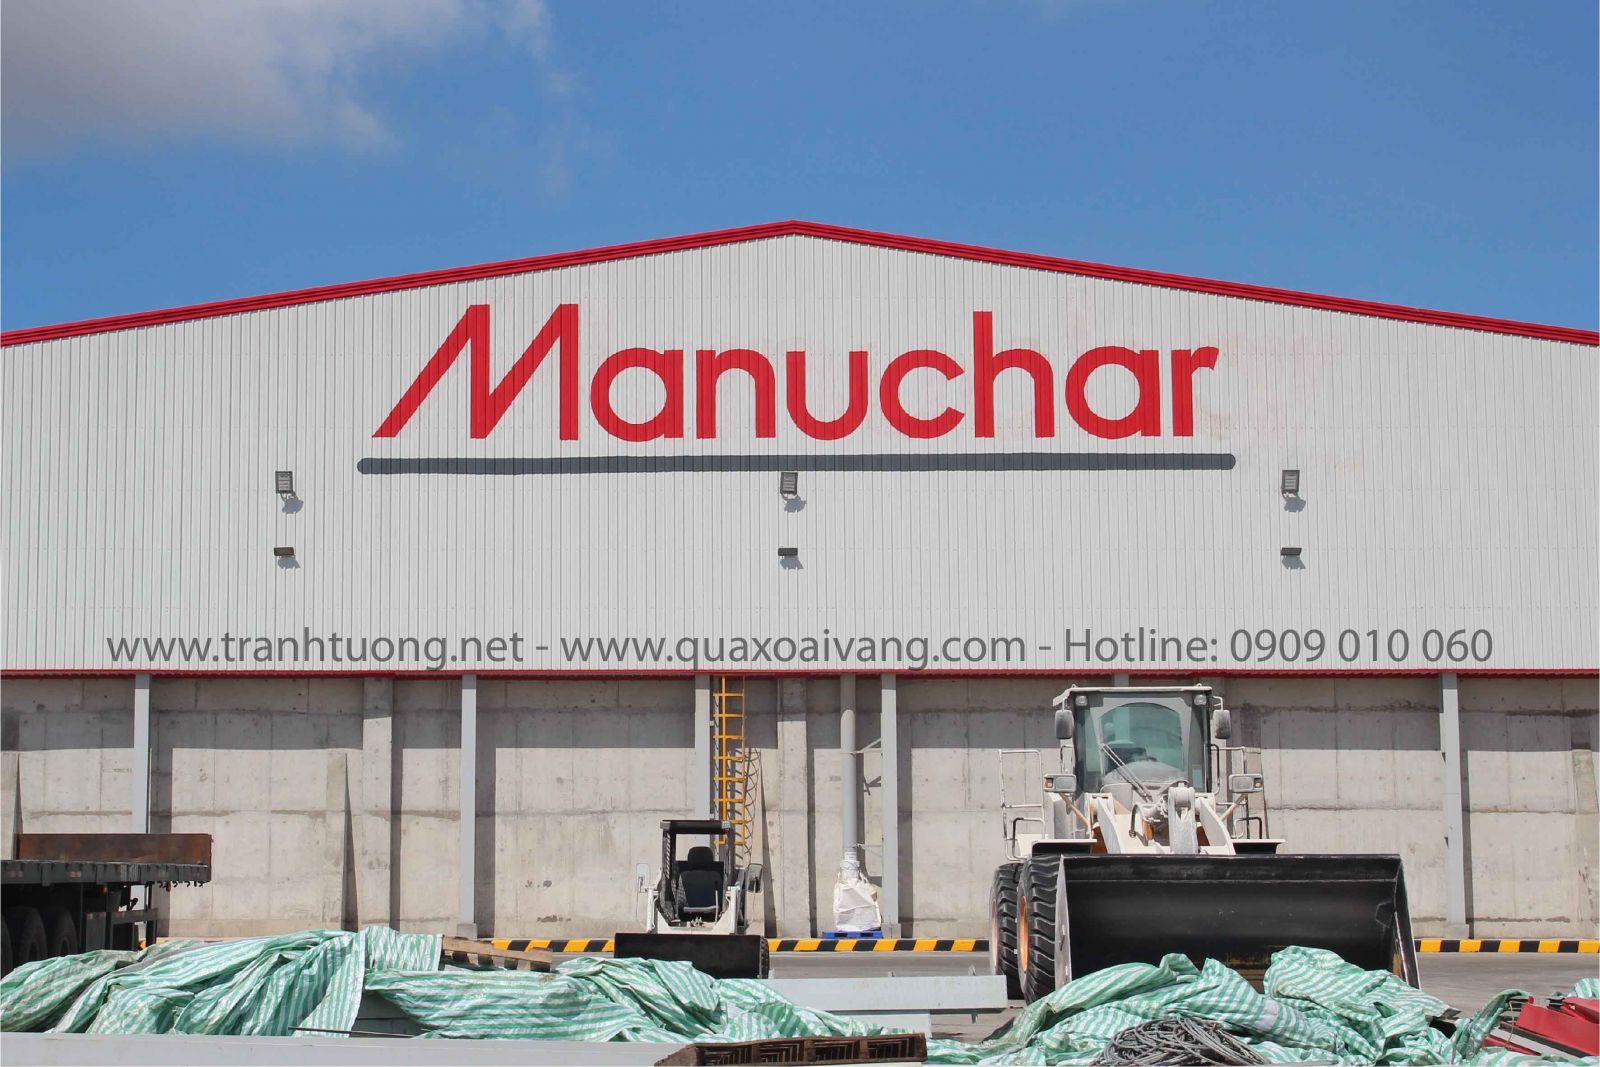 Vẽ logo công ty Manuchar